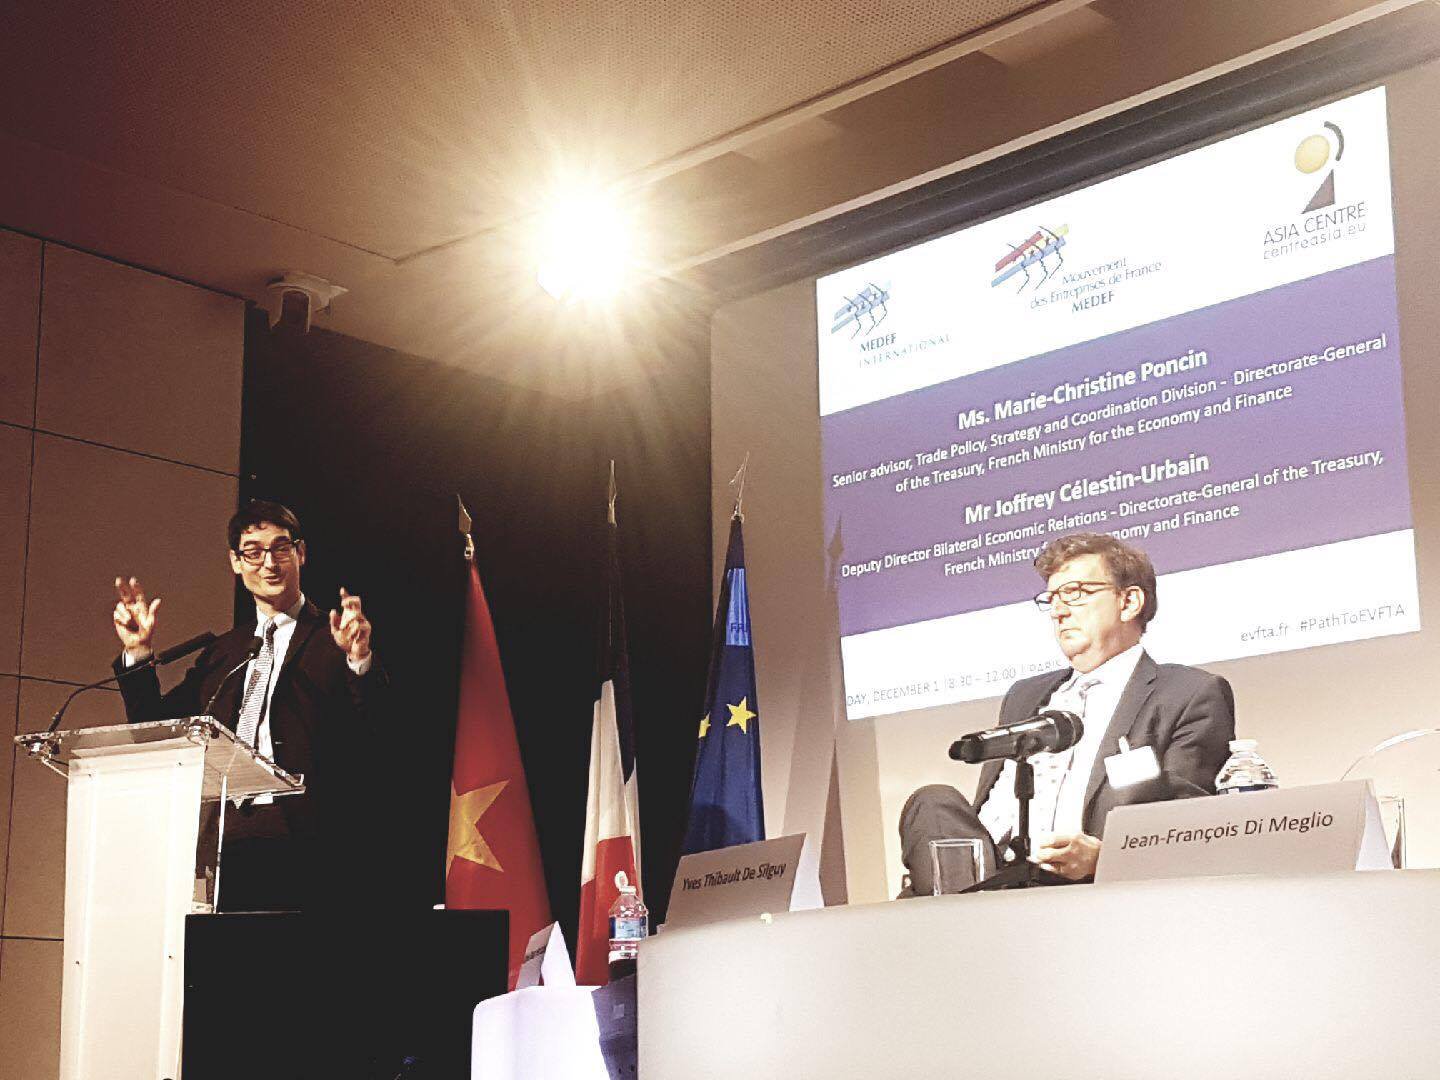 Joffrey Célestin-Urbain prononce son discours  enthousiaste sur l’avenir prometteur des entreprises tant vietnamiennes  que françaises après l’EVFTA, lors d’un colloque en décembre dernier à Asia Center à Paris.Photo: Asia Center